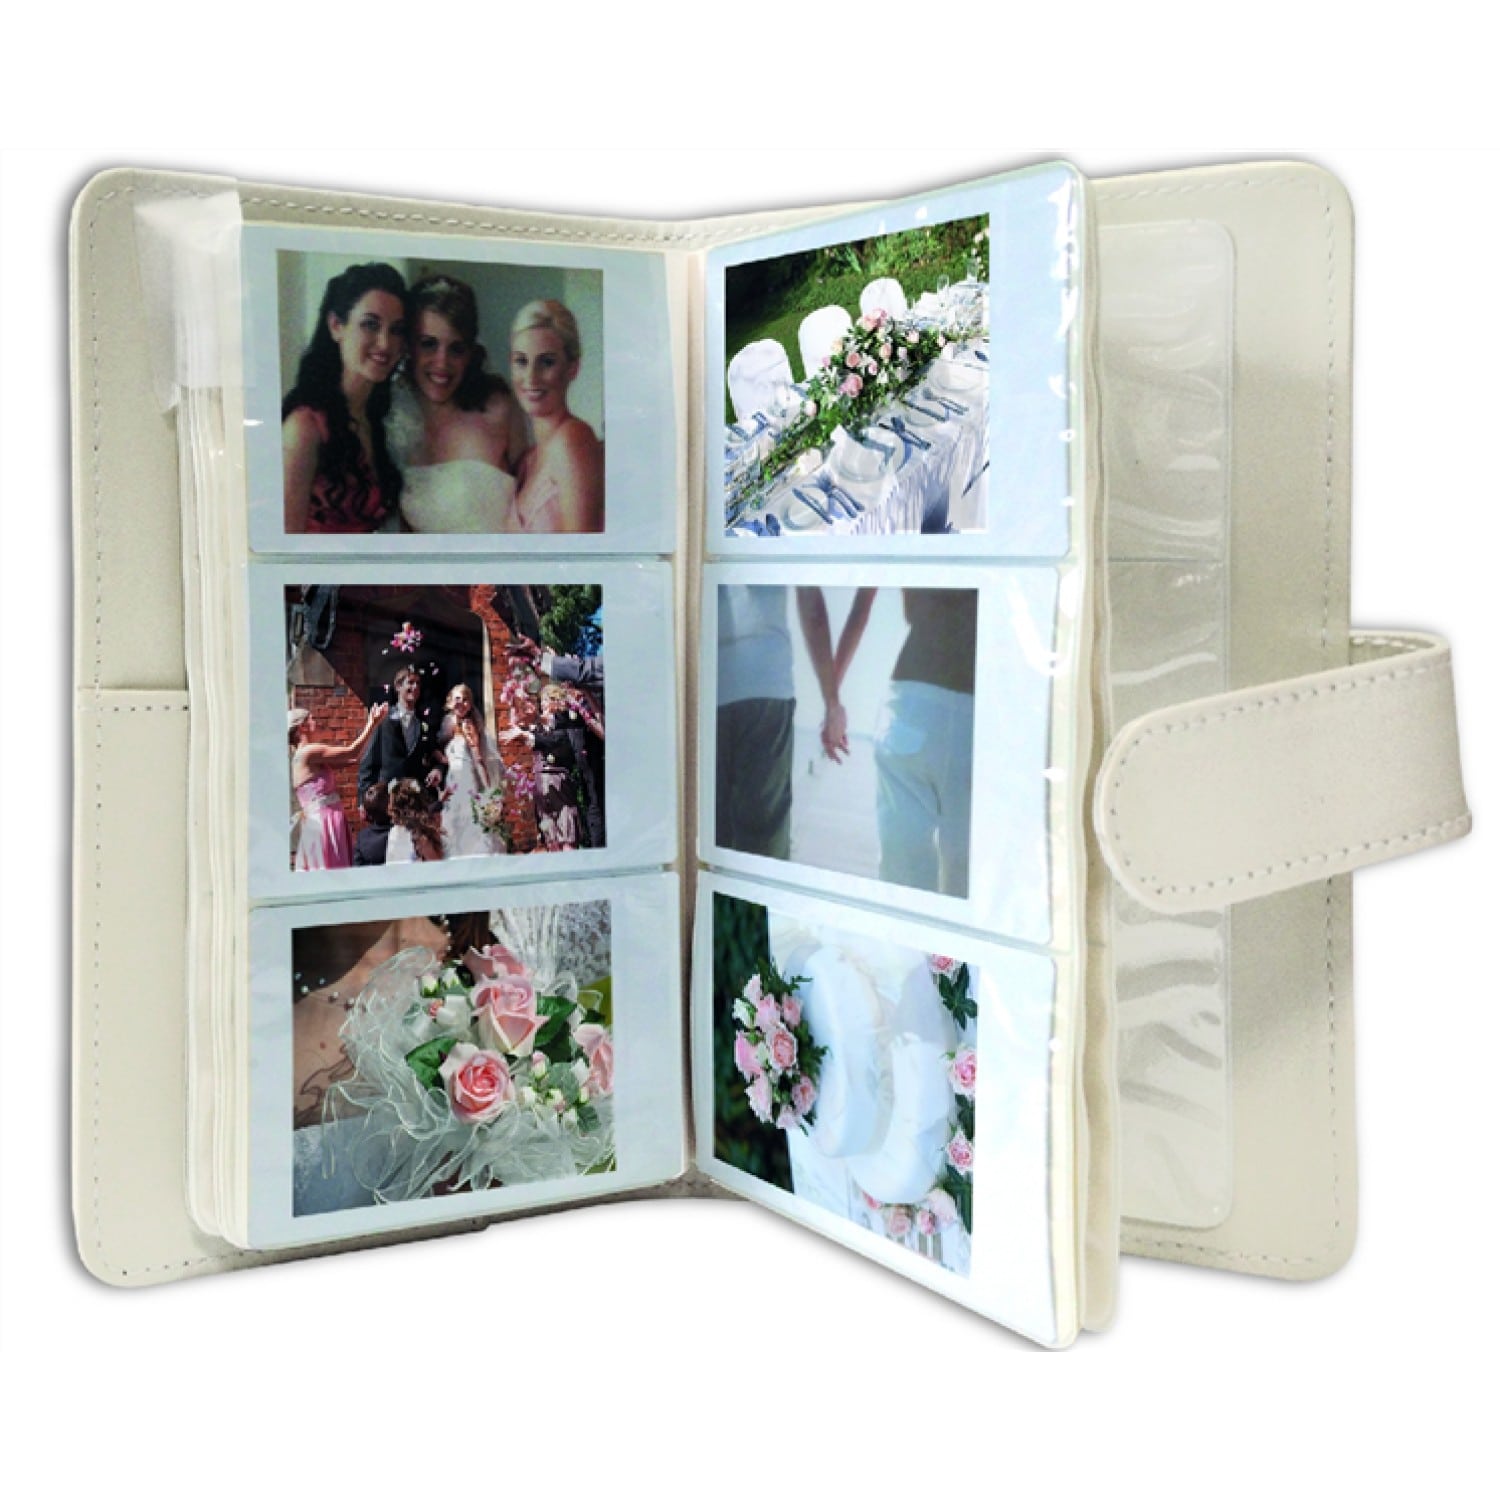 Appareil photo instantané FUJI Instax Mini 9 MA BOX MARIAGE : Appareil  instantané + 5 bipacks mini + 1 feutre argenté + 1 album blanc Blanc cendré